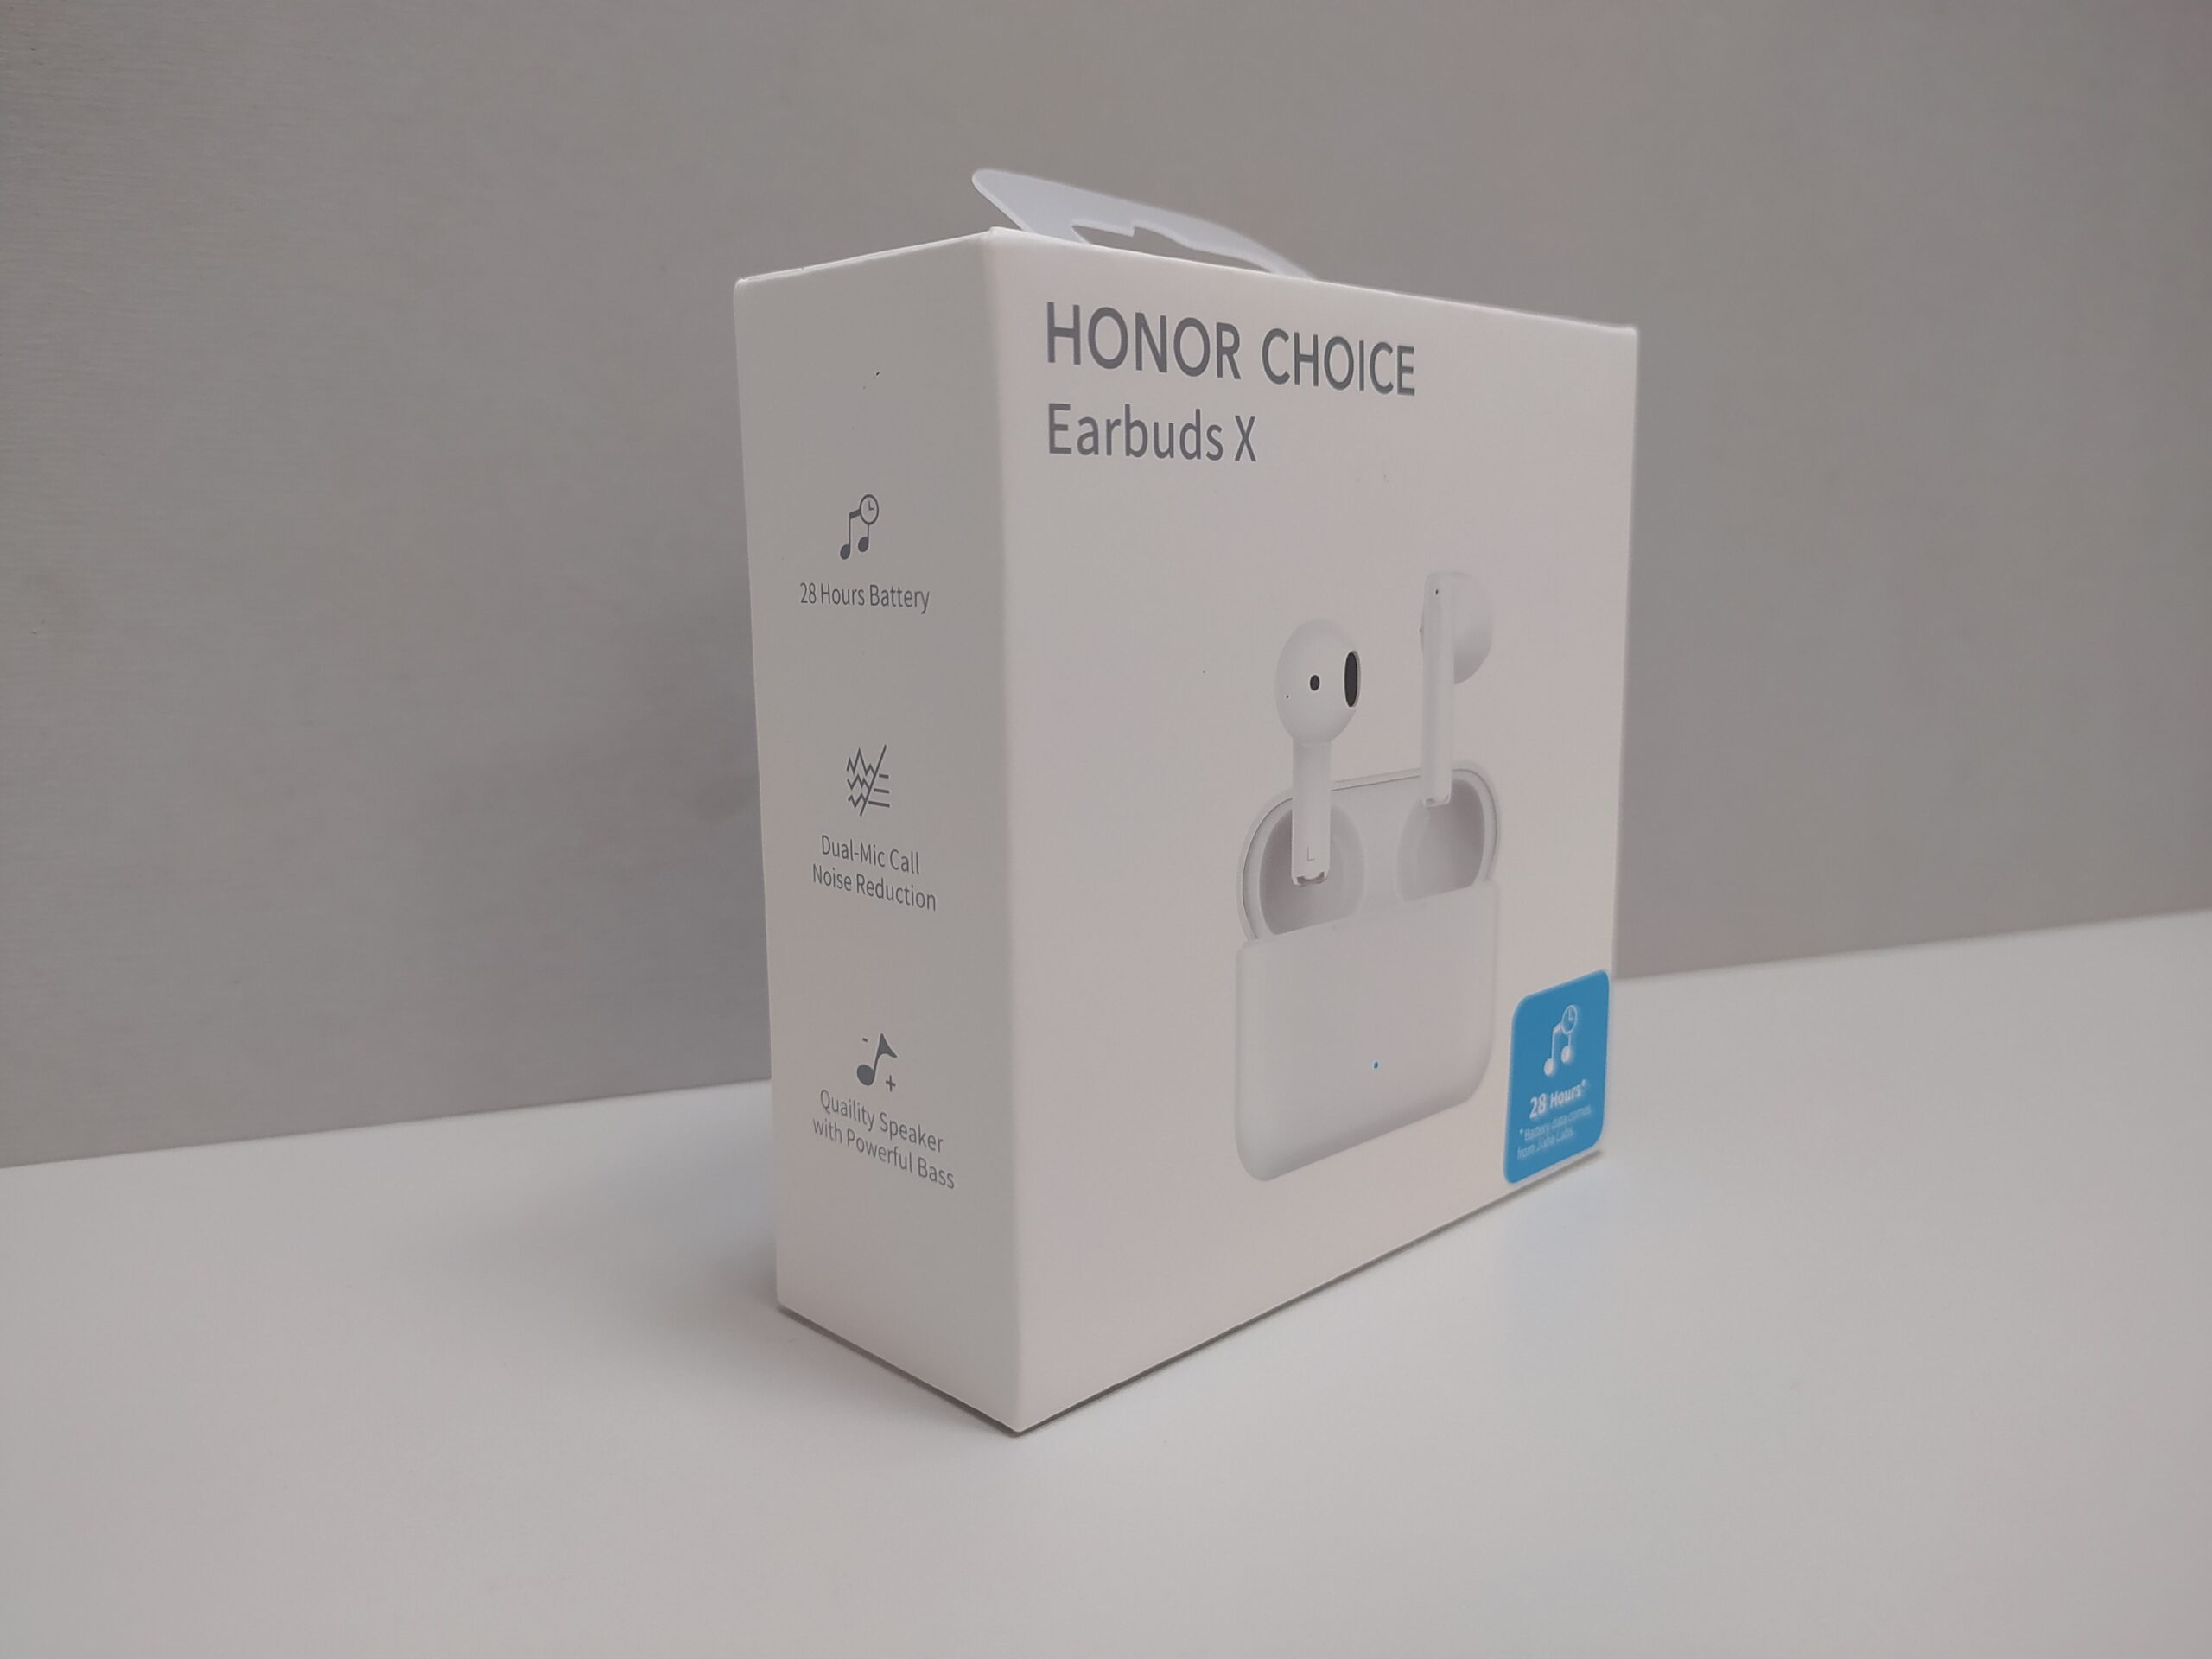 Обзор наушников Honor Choice Earbuds X. 28 часов без зарядки, игровой режим и IPX4